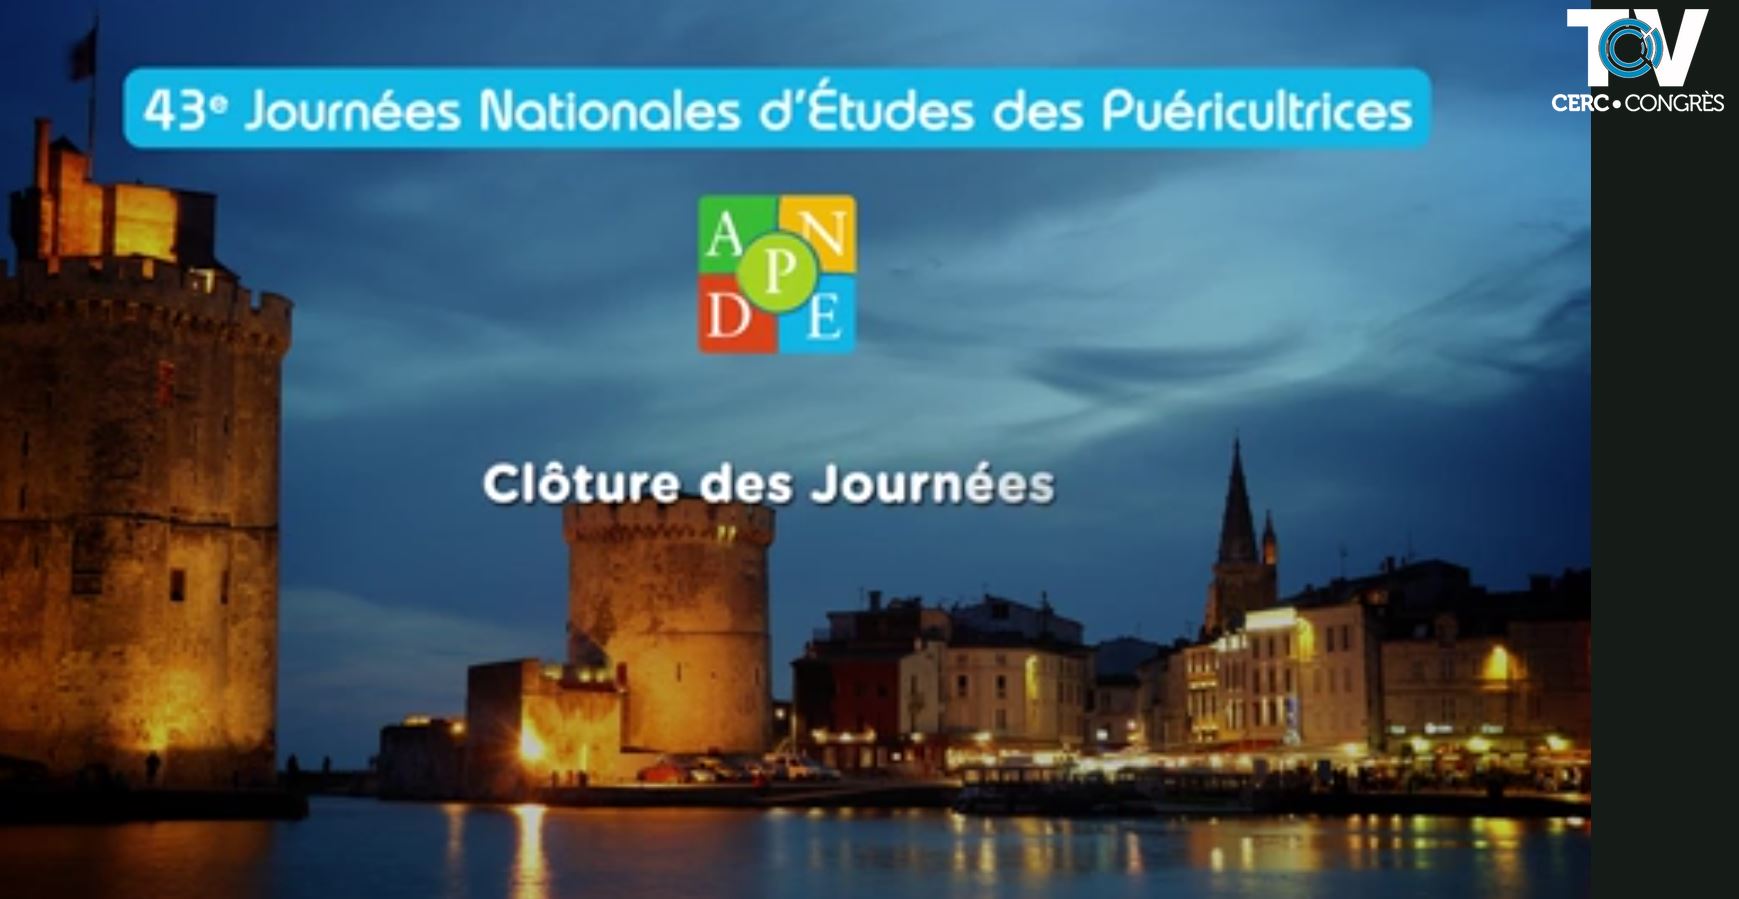 43èmes Journées Nationales d’Études des puéricultrices - La Rochelle - 13 - 14 - 15 juin 2018